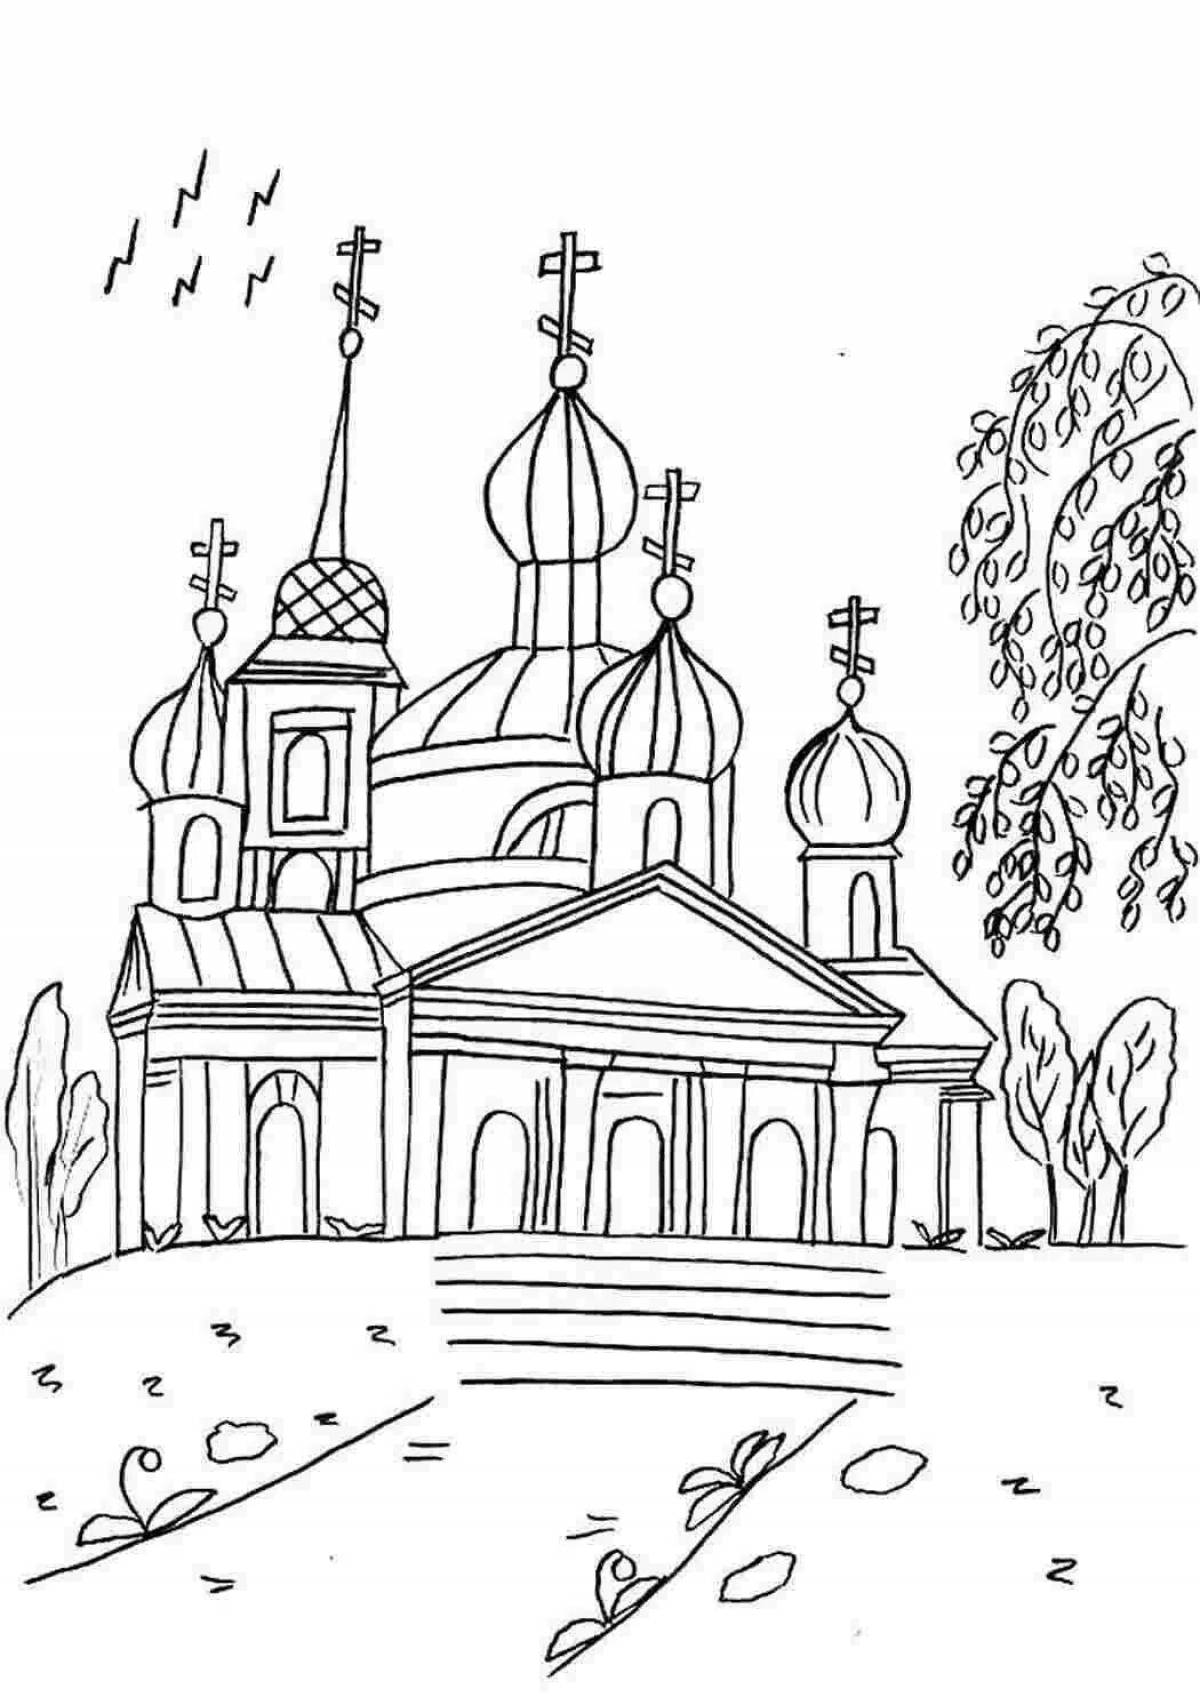 Царская раскраска купольная церковь для детей